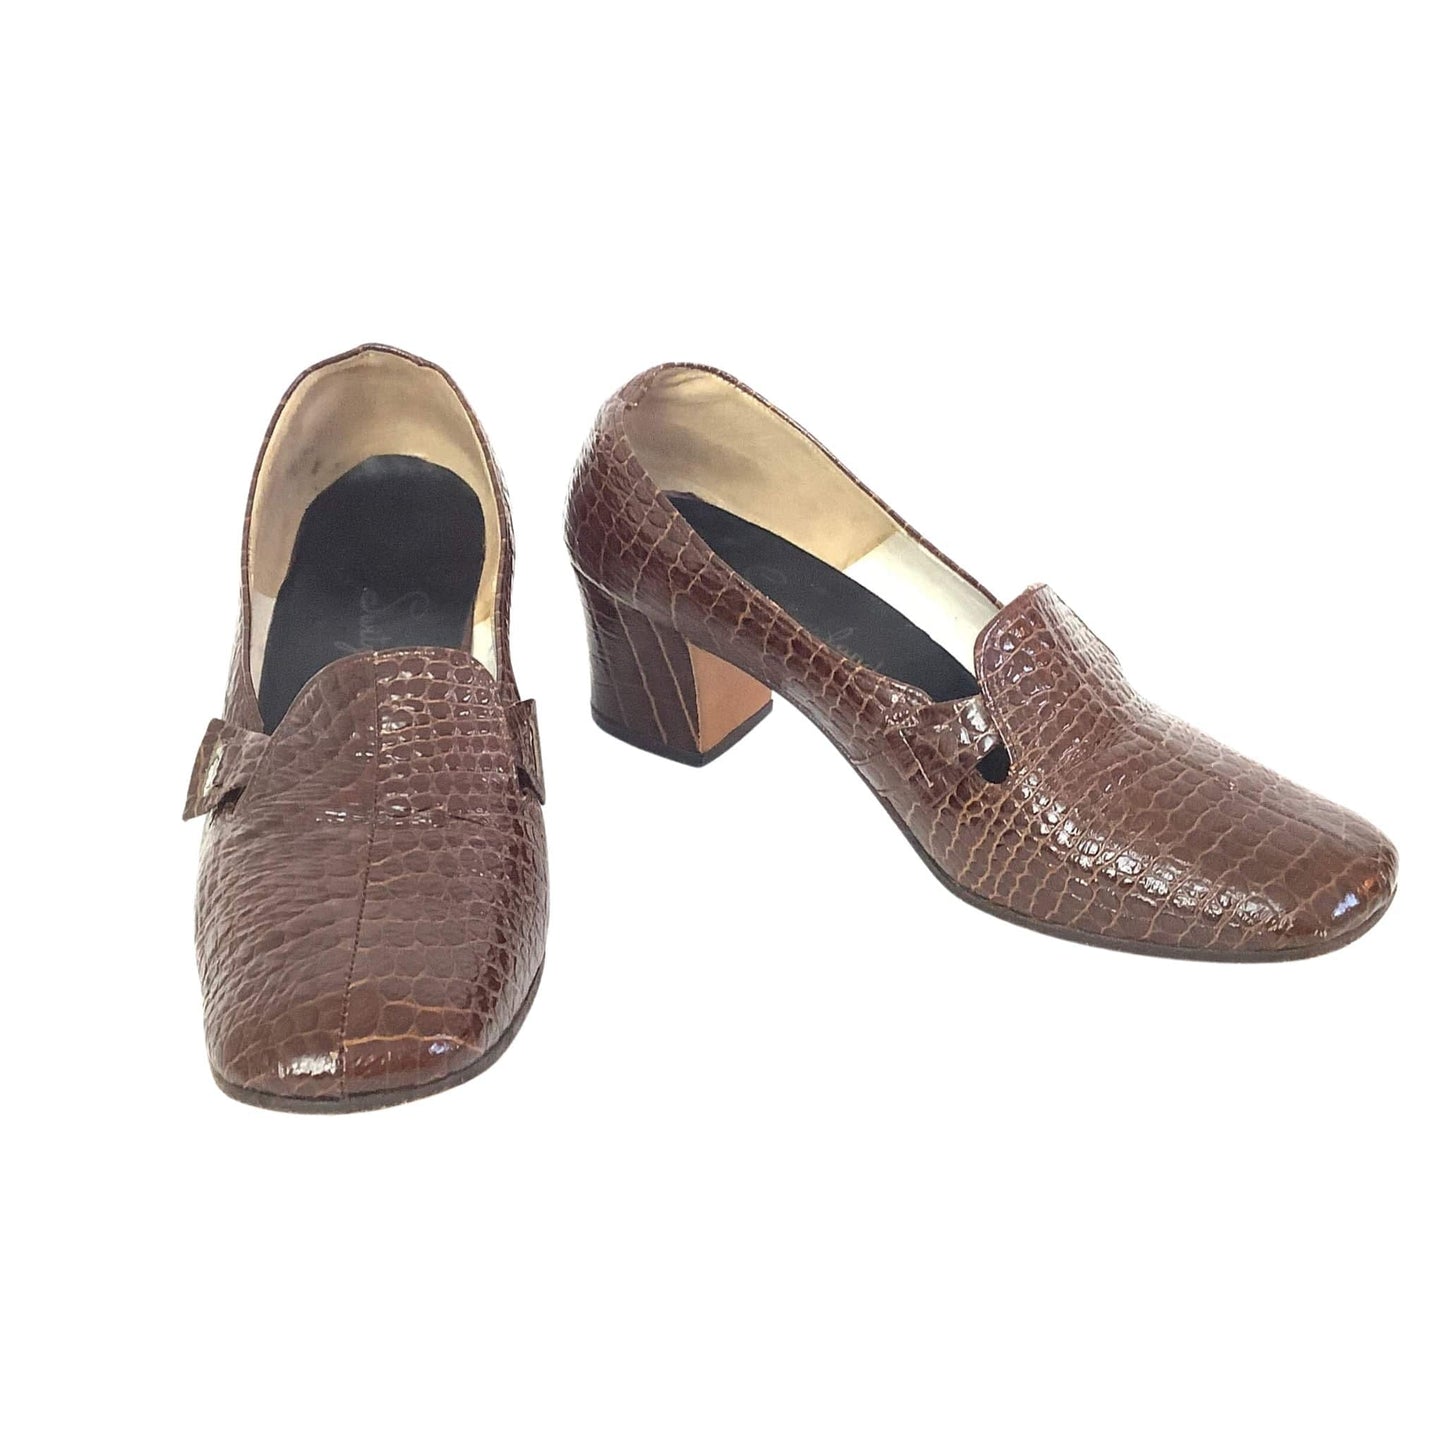 Moc Croc Mod Shoes 6 / Brown / Vintage 1960s